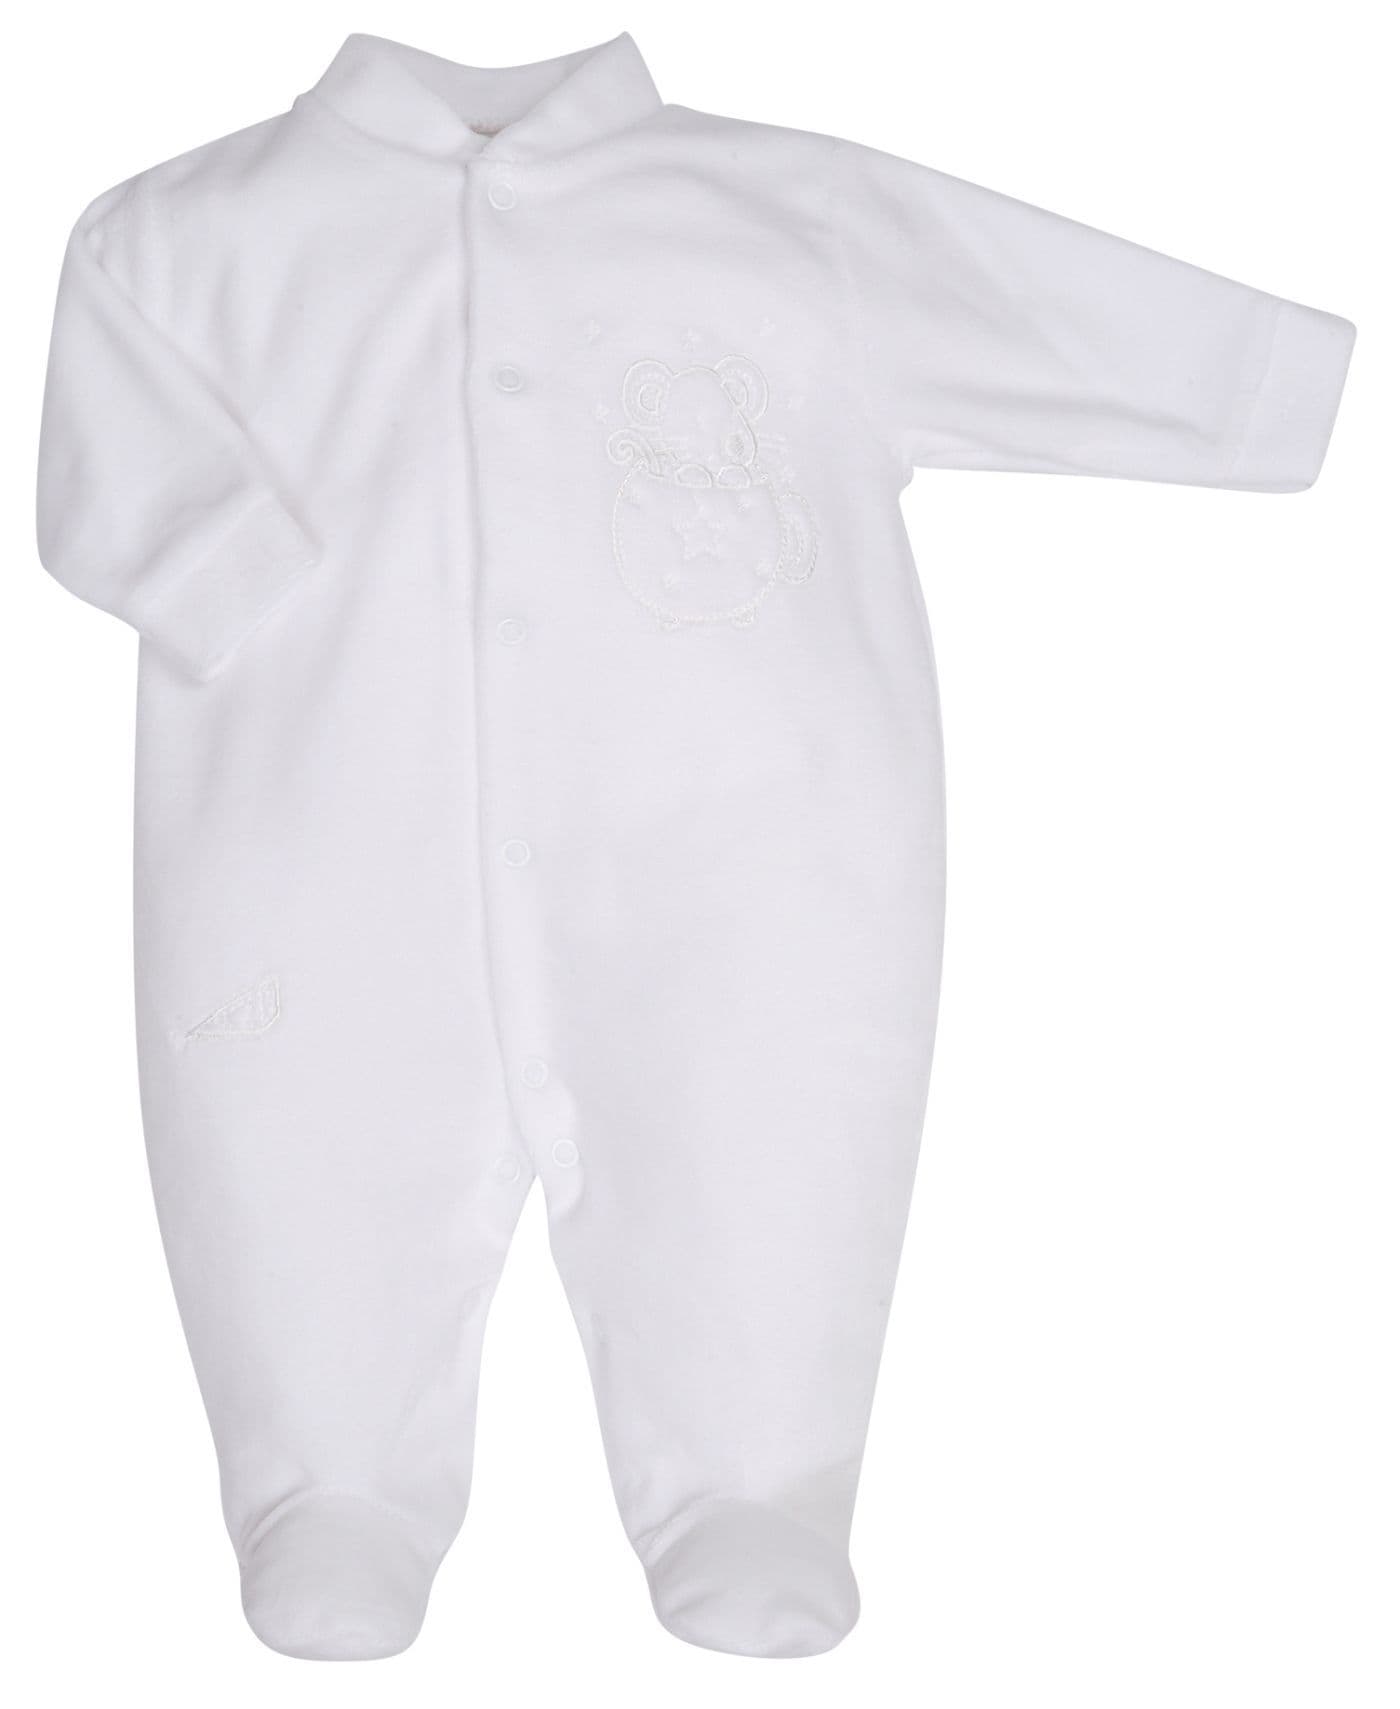 Premature Baby Unisex White Velour Sleepsuit